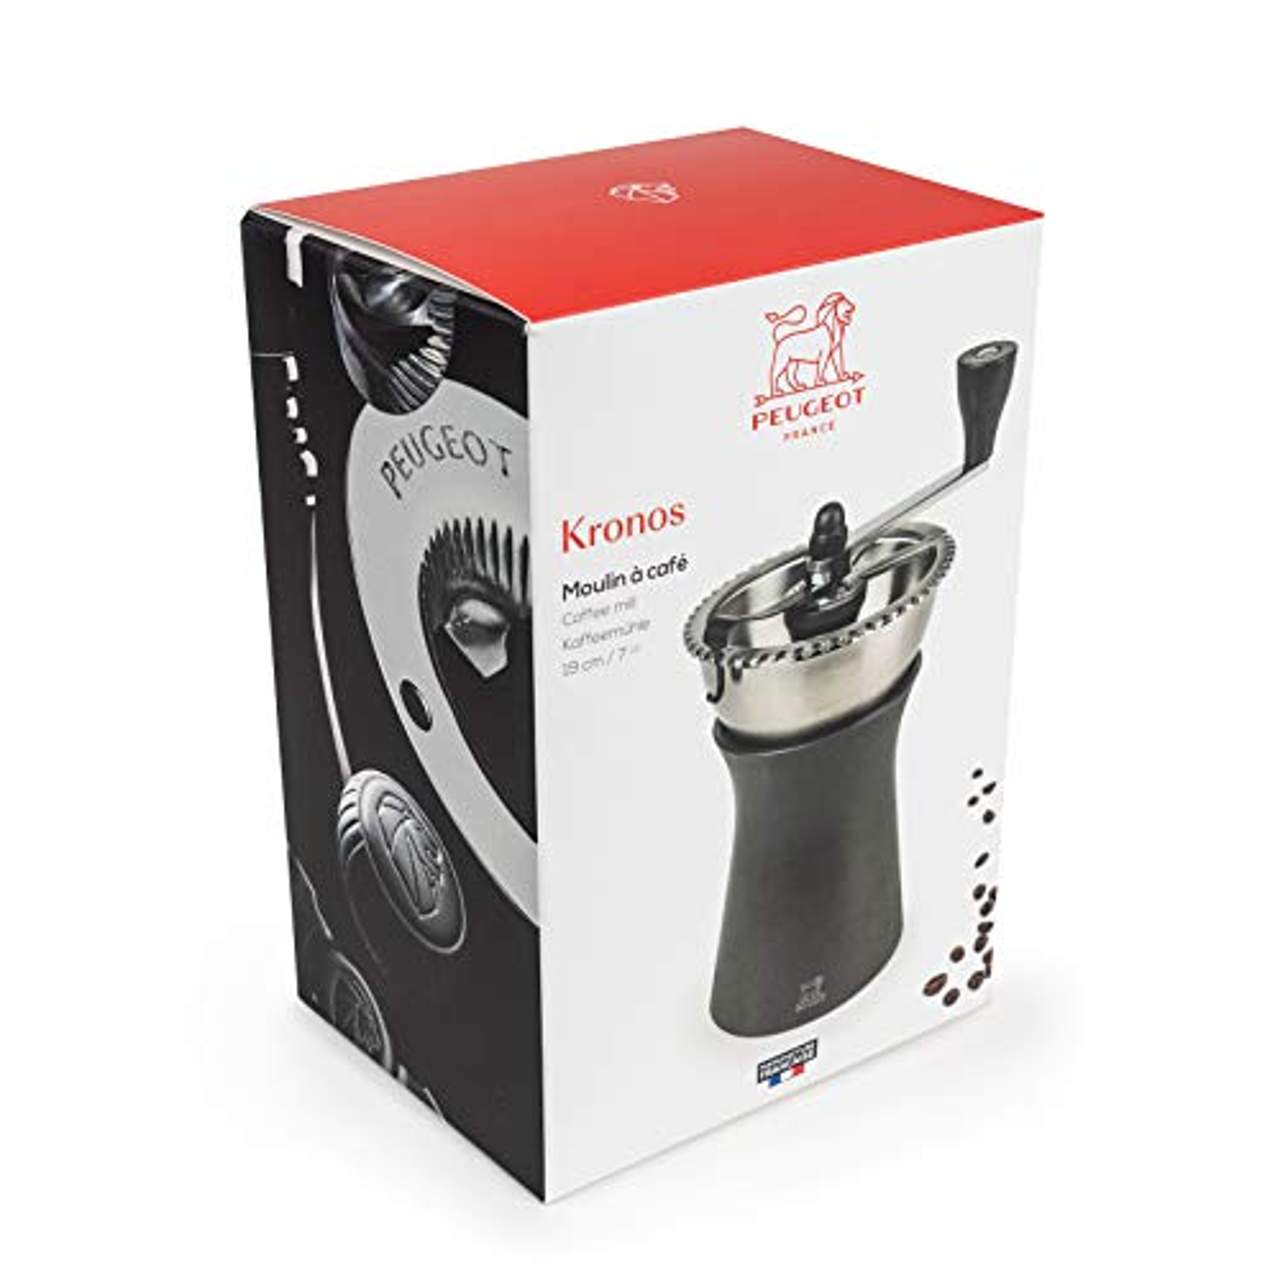 Peugeot Manuelle Kaffeemühle Kronos